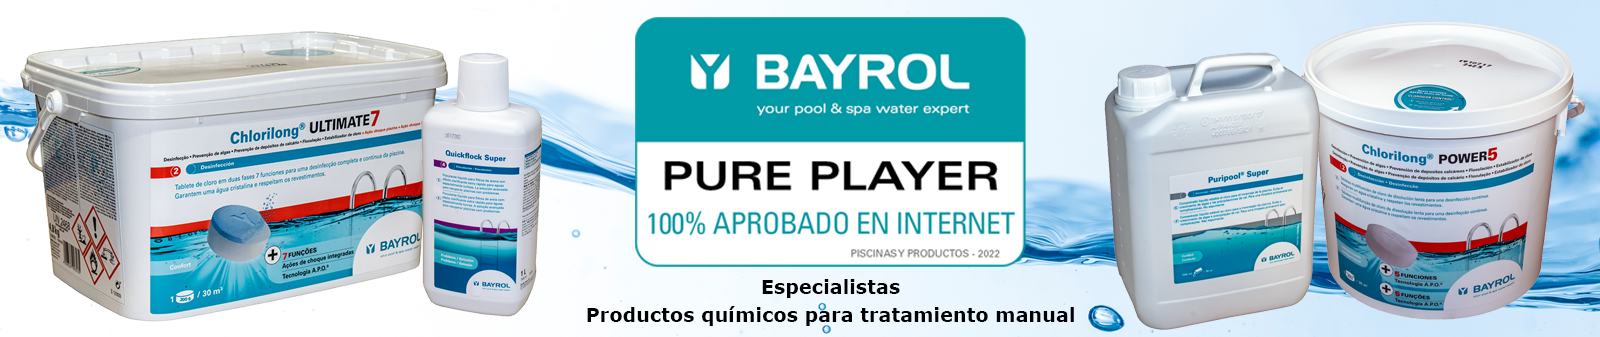 Banner-bayrol-chemische-produkte-w.png